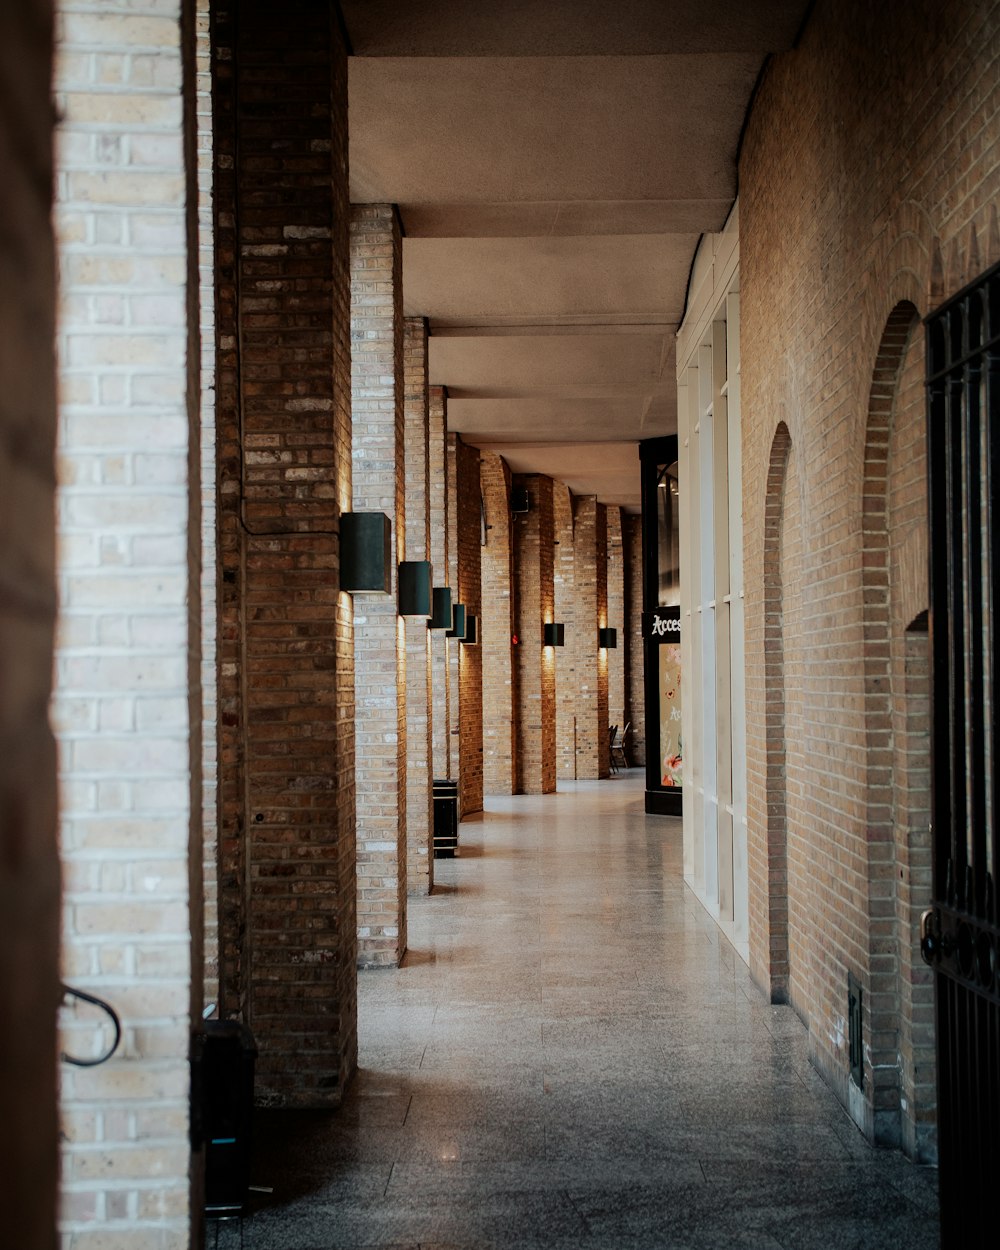 a long hallway between two brick buildings